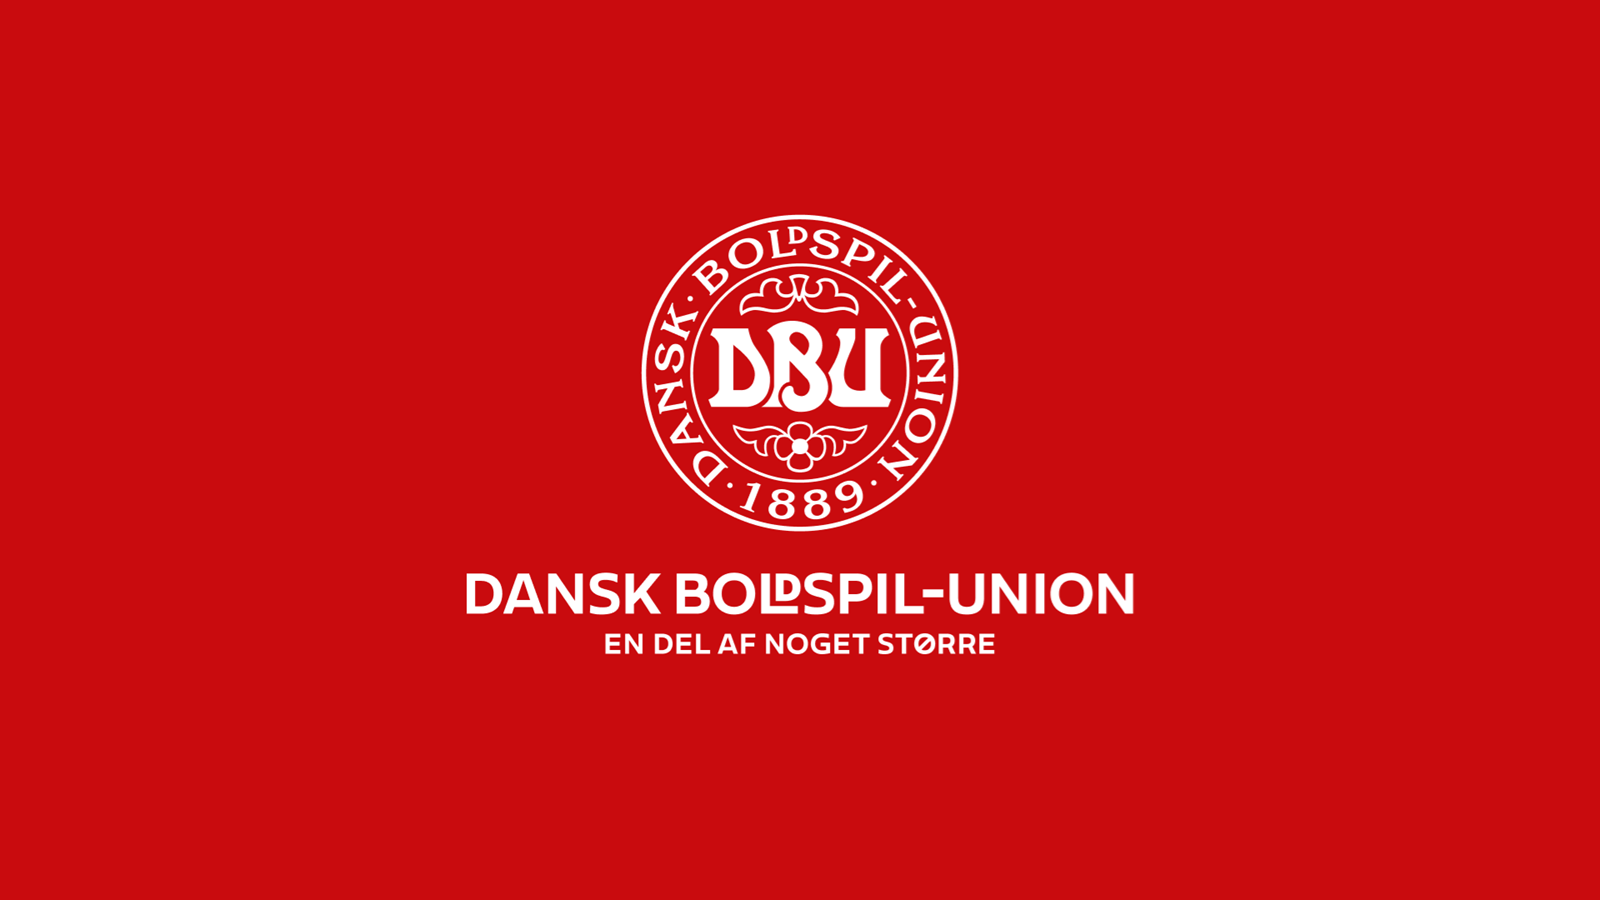 DBU-formand glæder sig over opbakning til europæisk sportsmodel